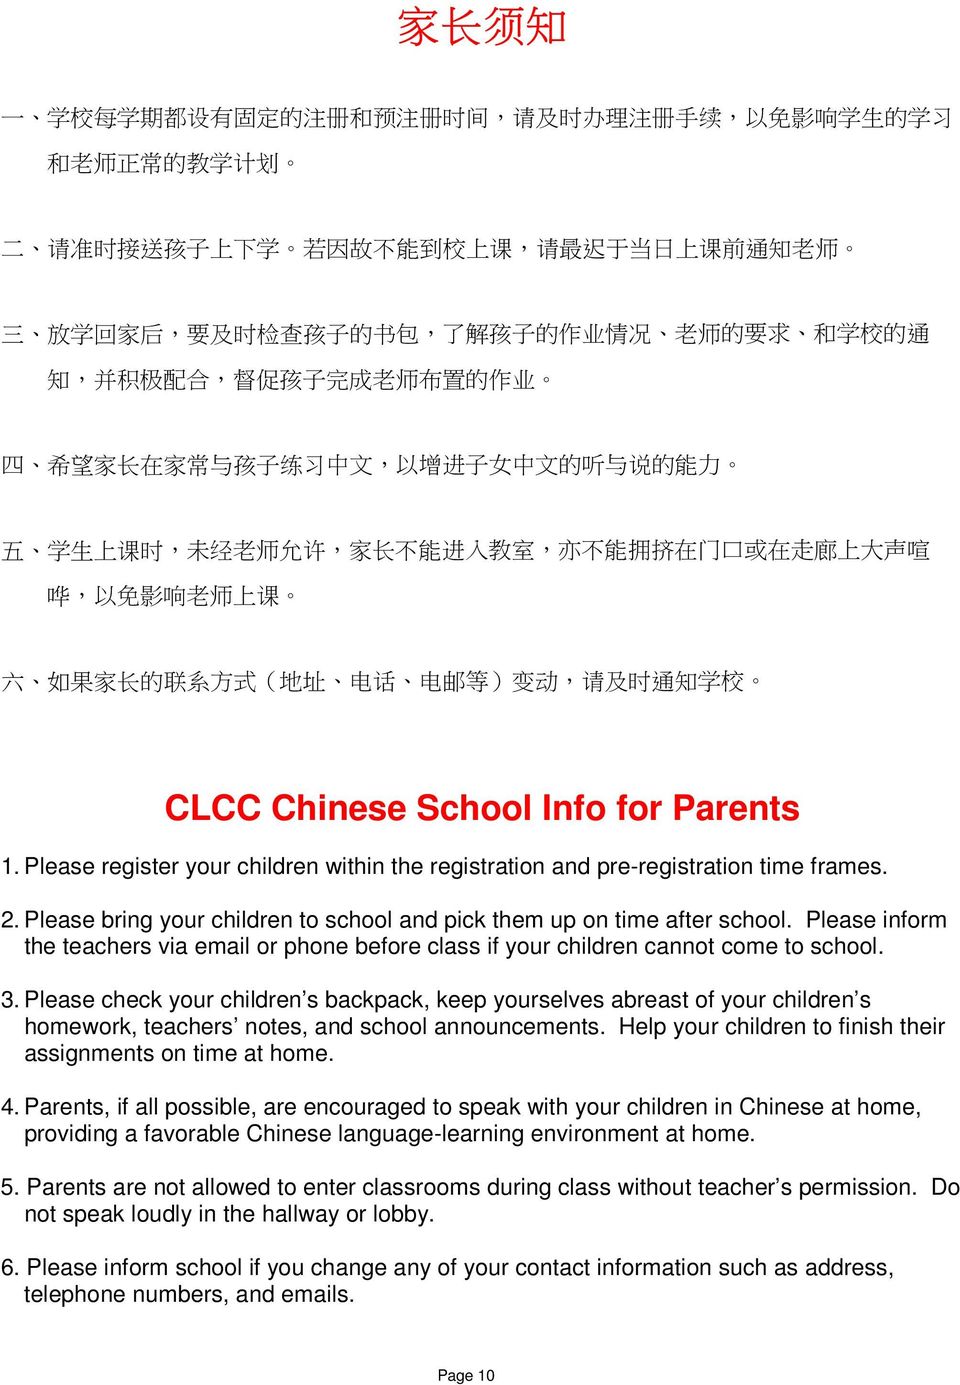 门 口 或 在 走 廊 上 大 声 喧 哗, 以 免 影 响 老 师 上 课 六 如 果 家 长 的 联 系 方 式 ( 地 址 电 话 电 邮 等 ) 变 动, 请 及 时 通 知 学 校 CLCC Chinese School Info for Parents 1.